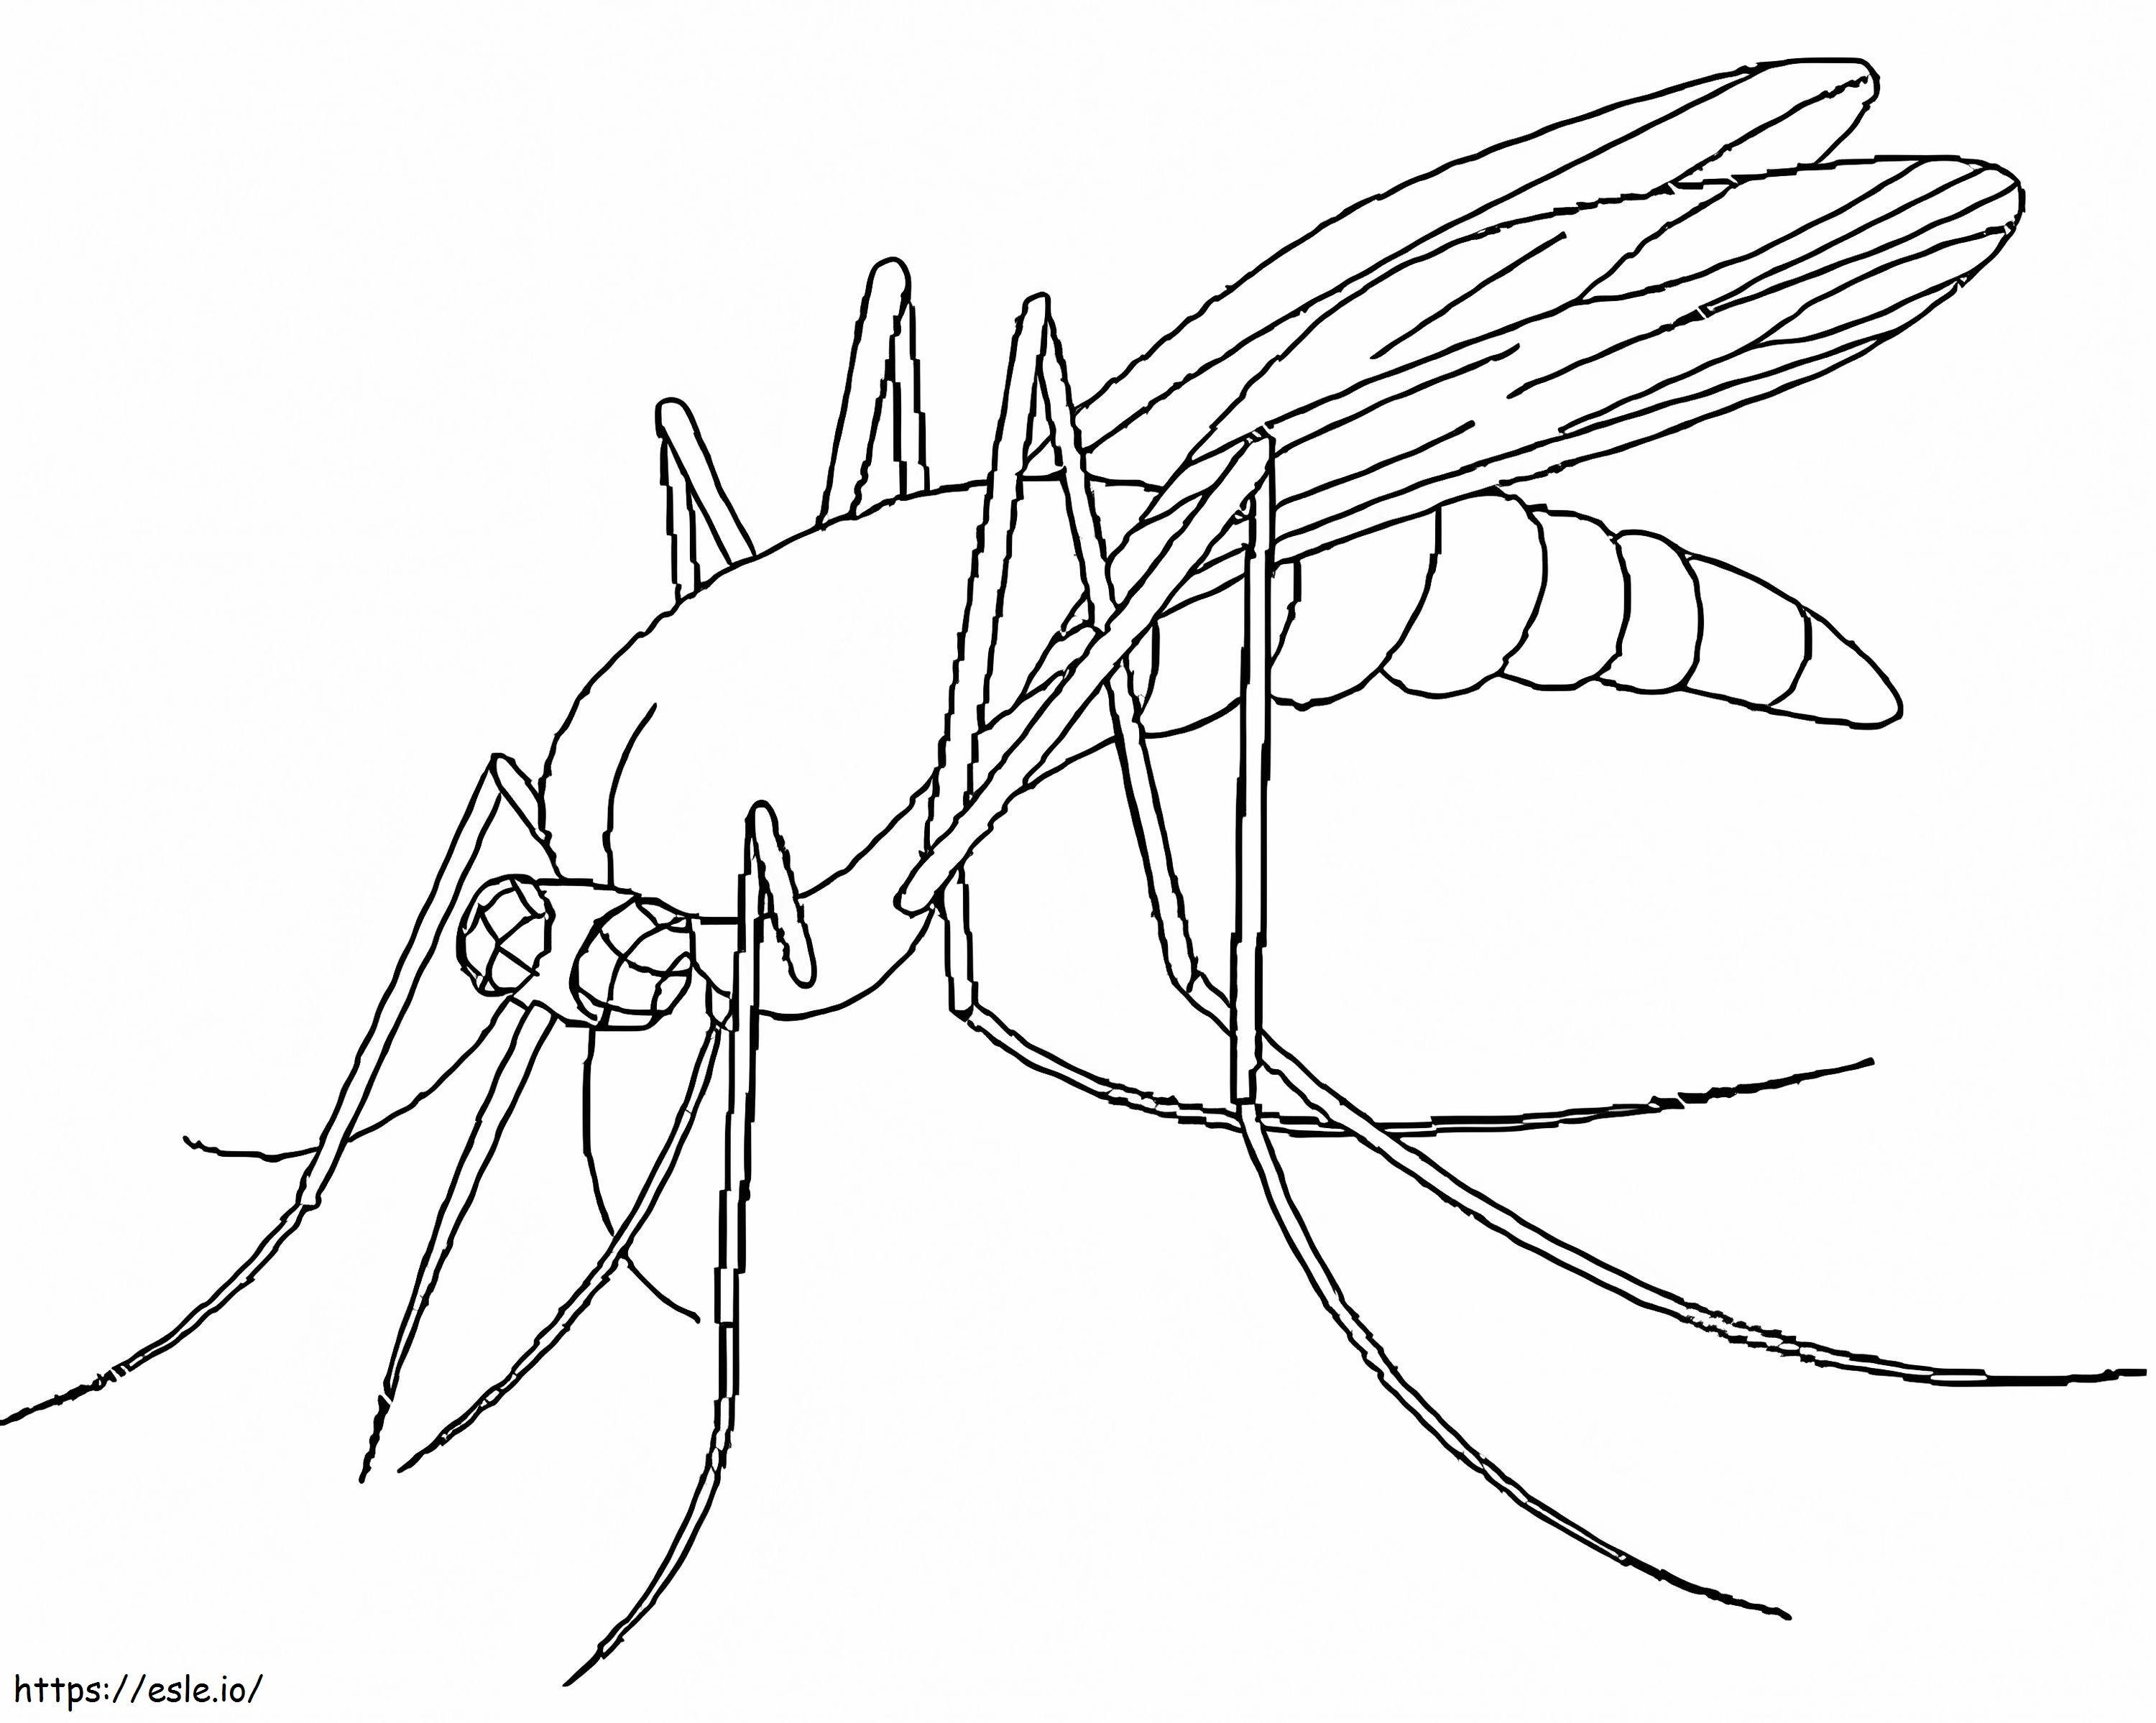 Mosquito assustador para colorir